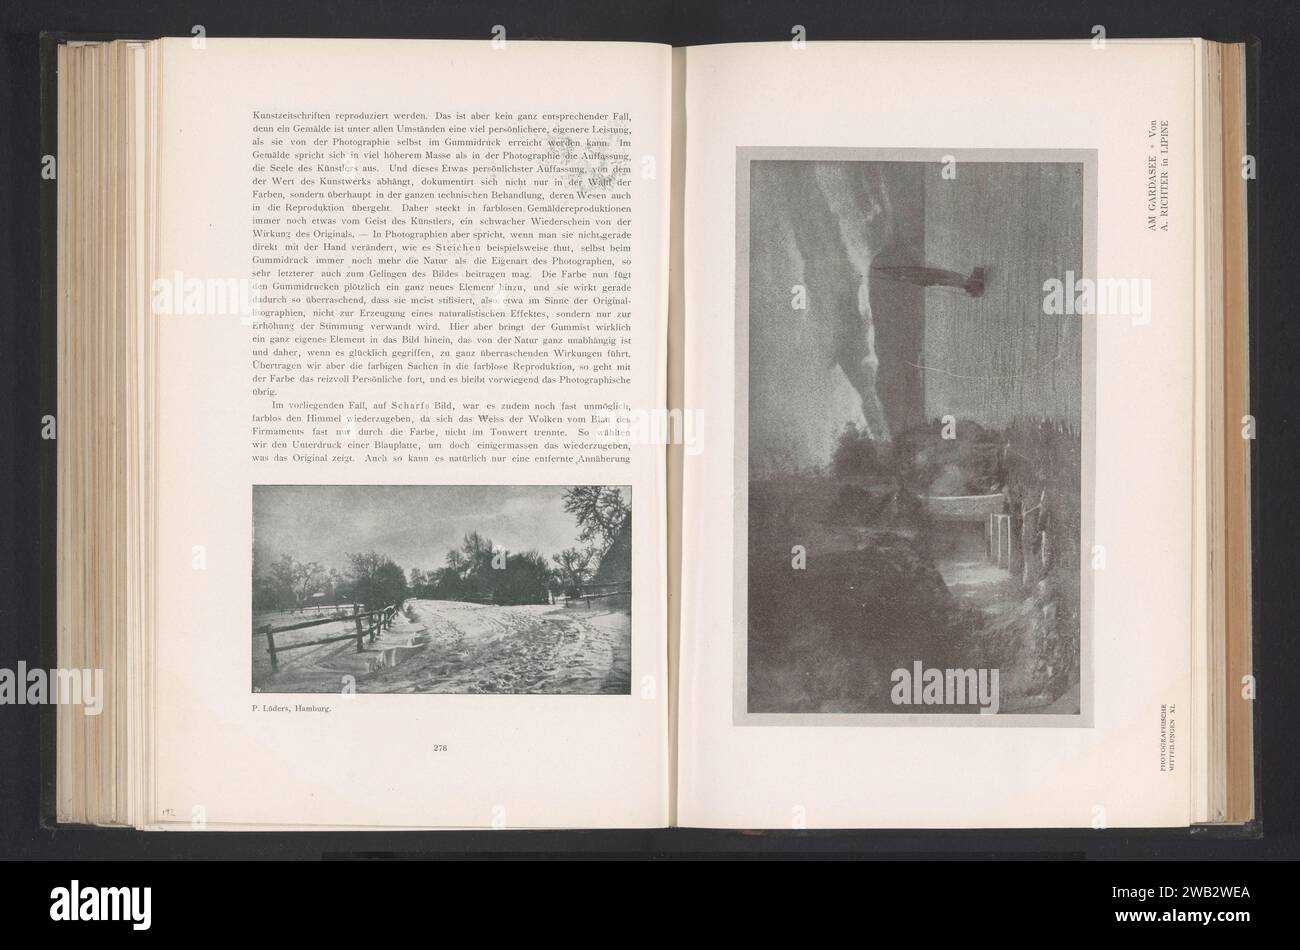 Veduta del Lago di Garda, A. Richter, c. 1898 - in o prima del 1903 stampa fotomeccanica Brescia (province) carta lago di Garda Foto Stock